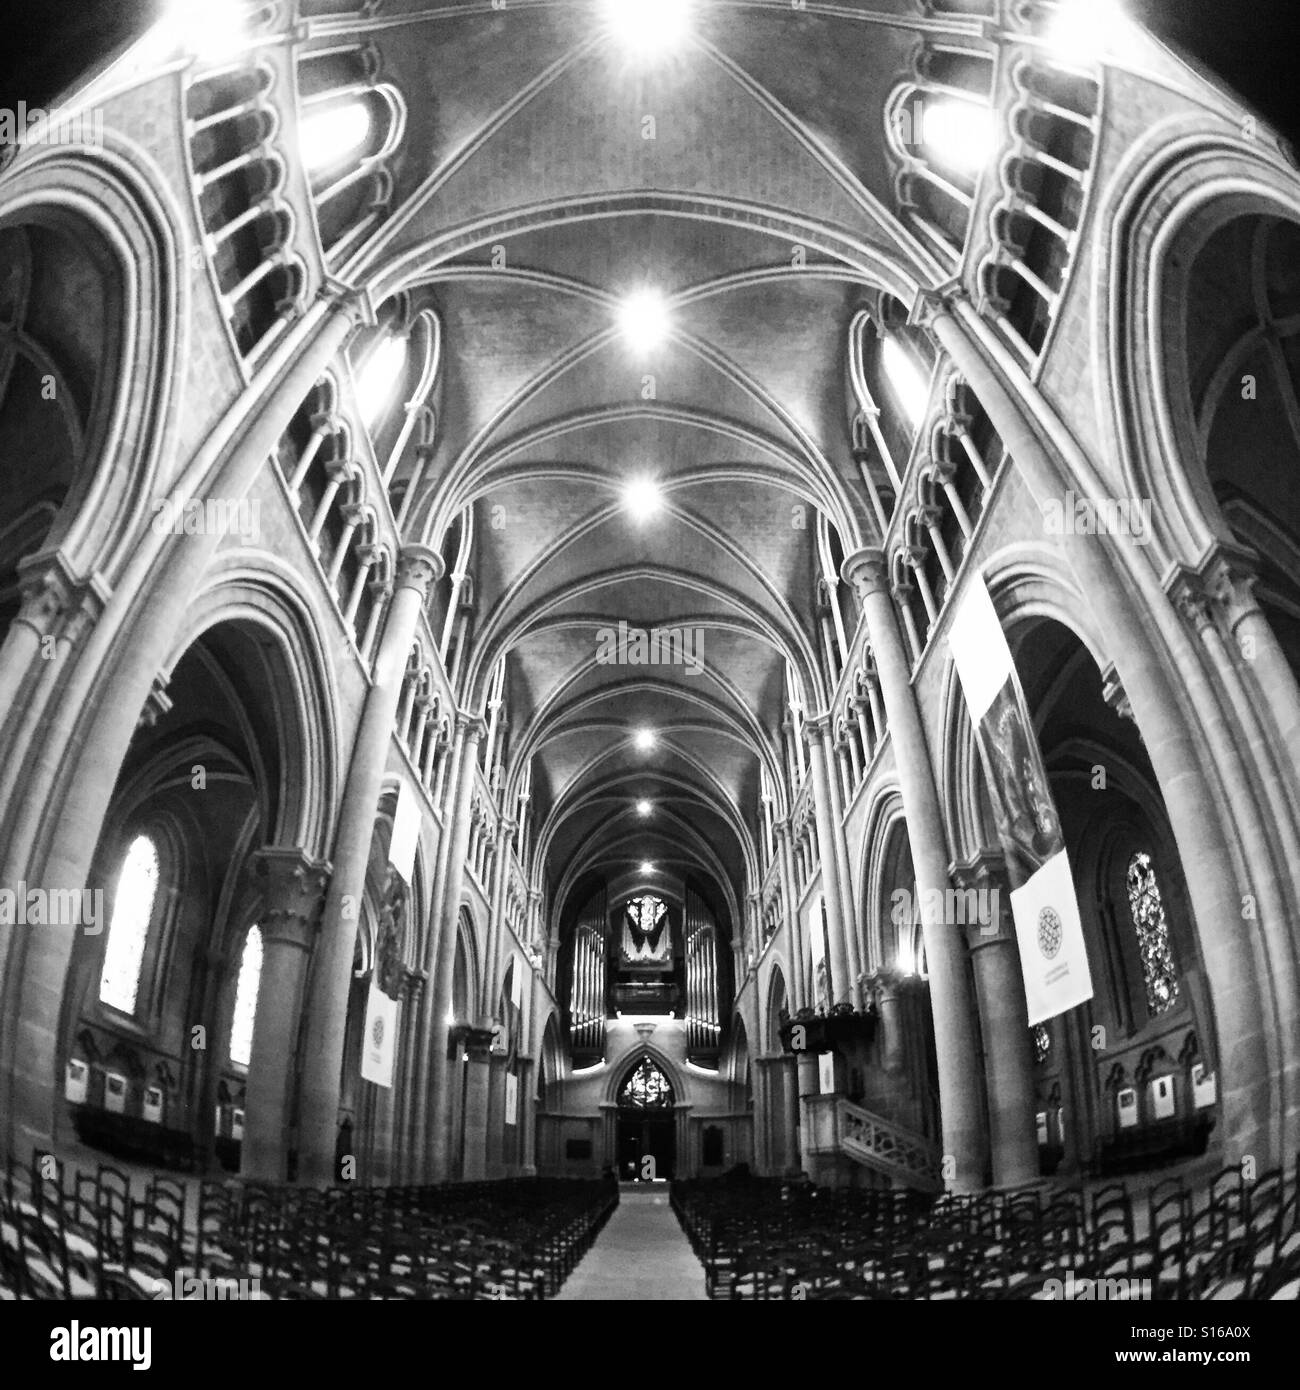 Im Inneren der Kathedrale nach oben auf die beeindruckende Architektur Stockfoto